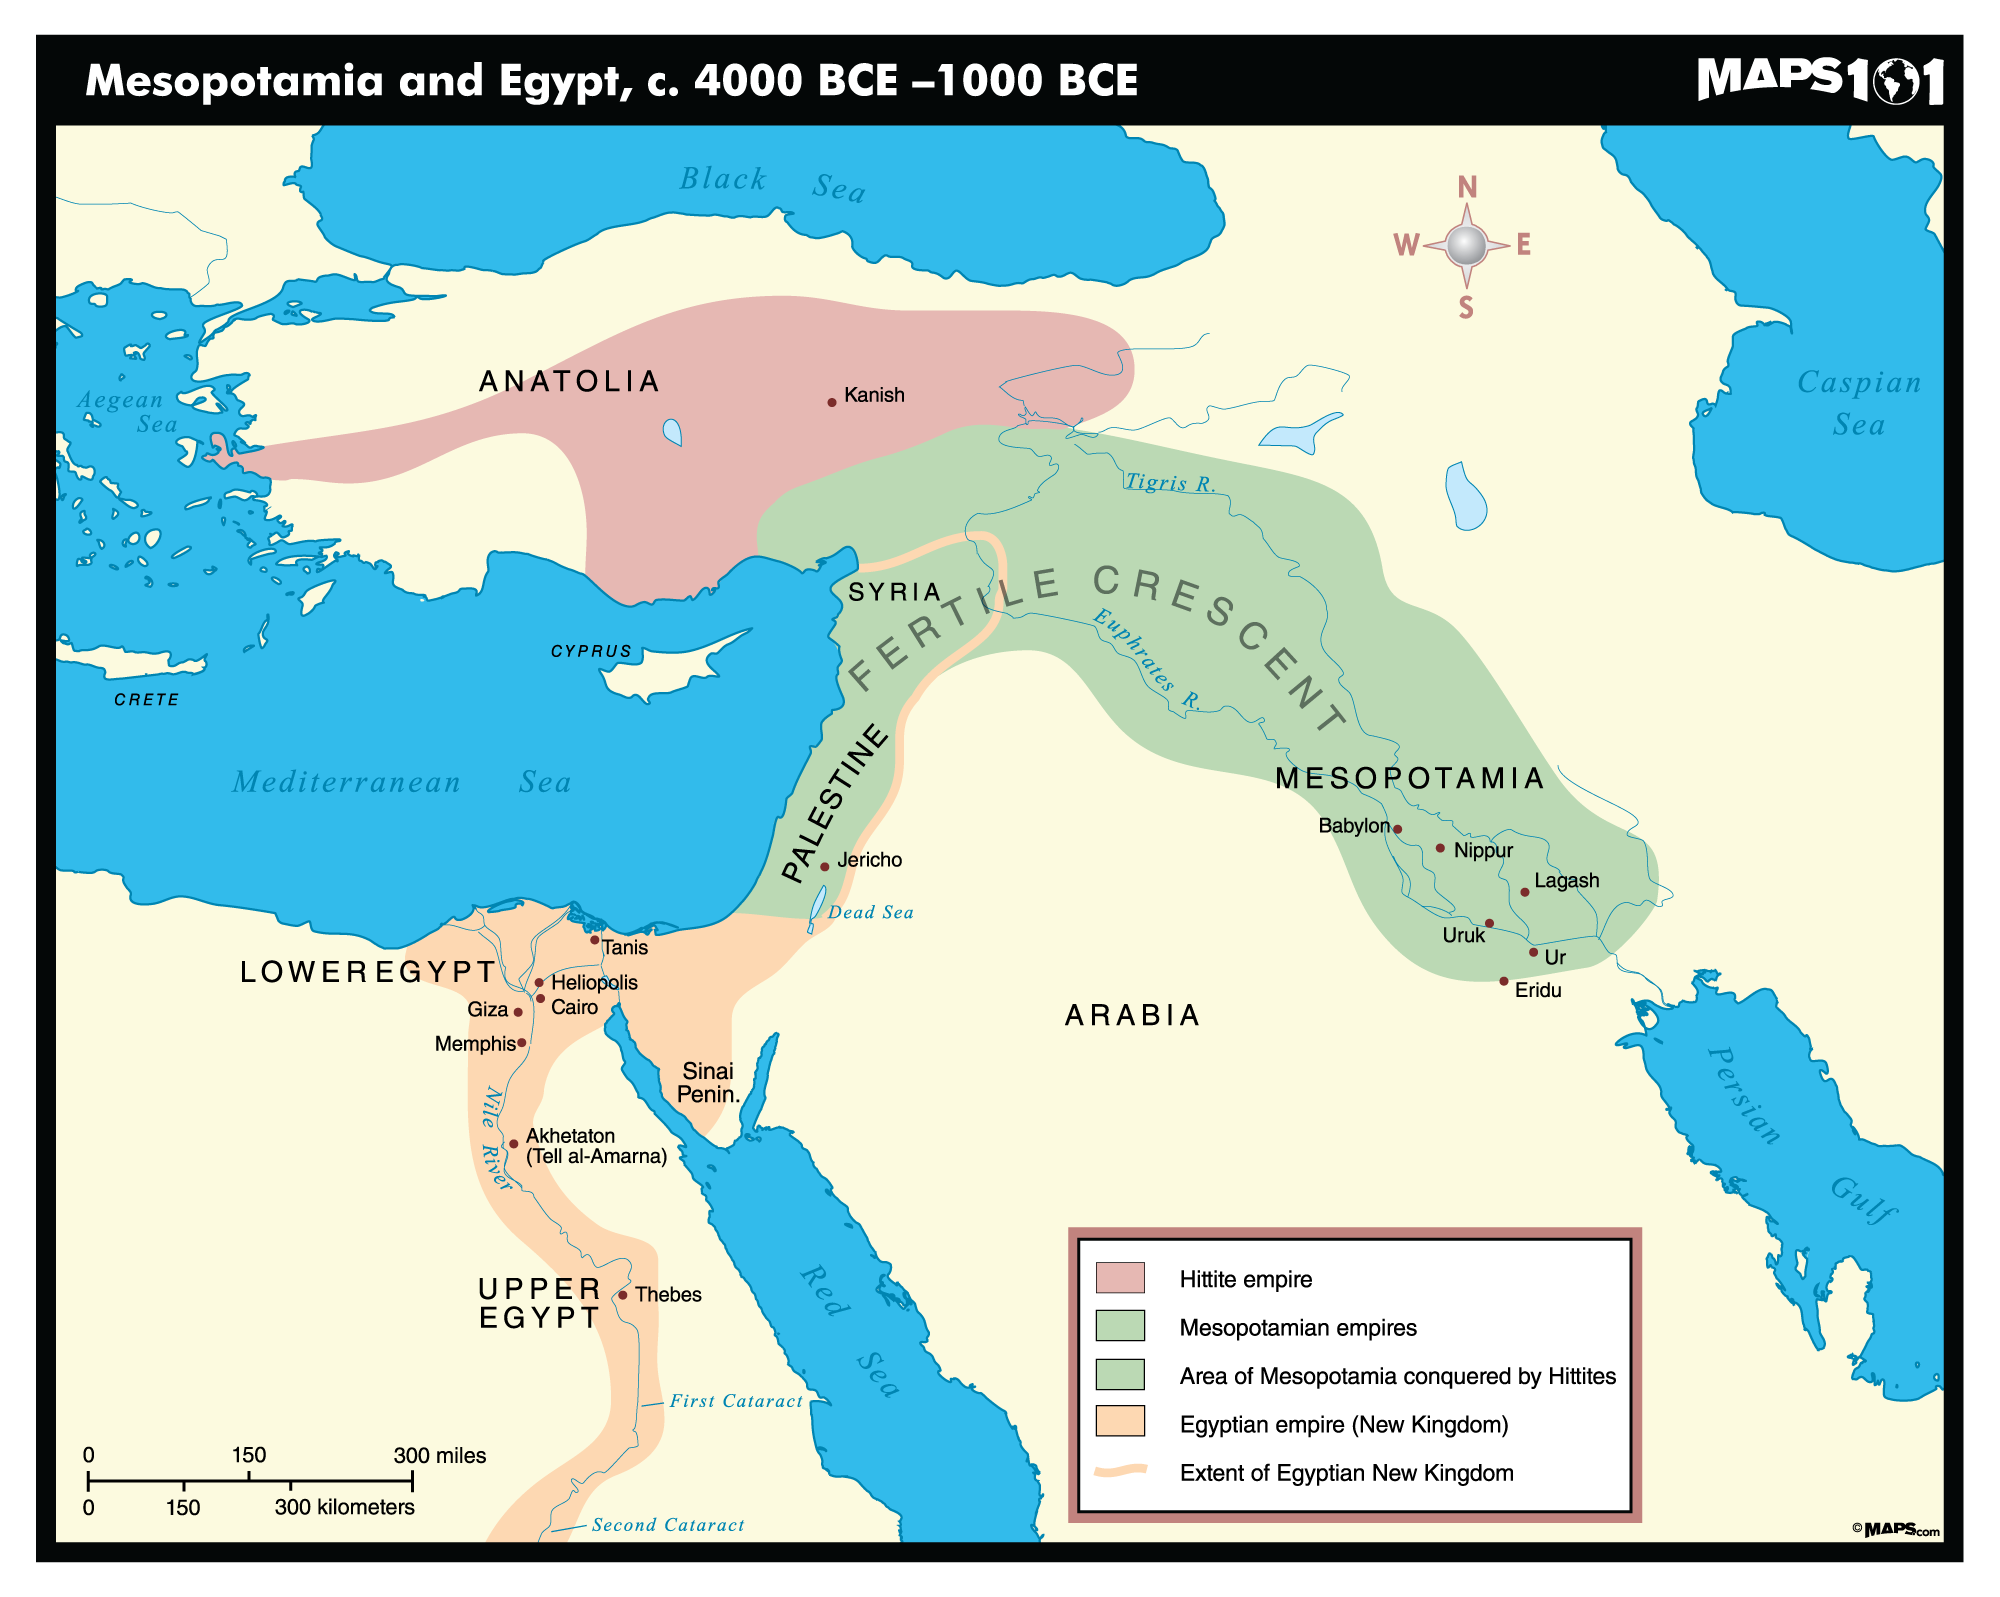 Mesopotamia & Egypt, c. 4000-1000 BCE Map | Maps.com.com